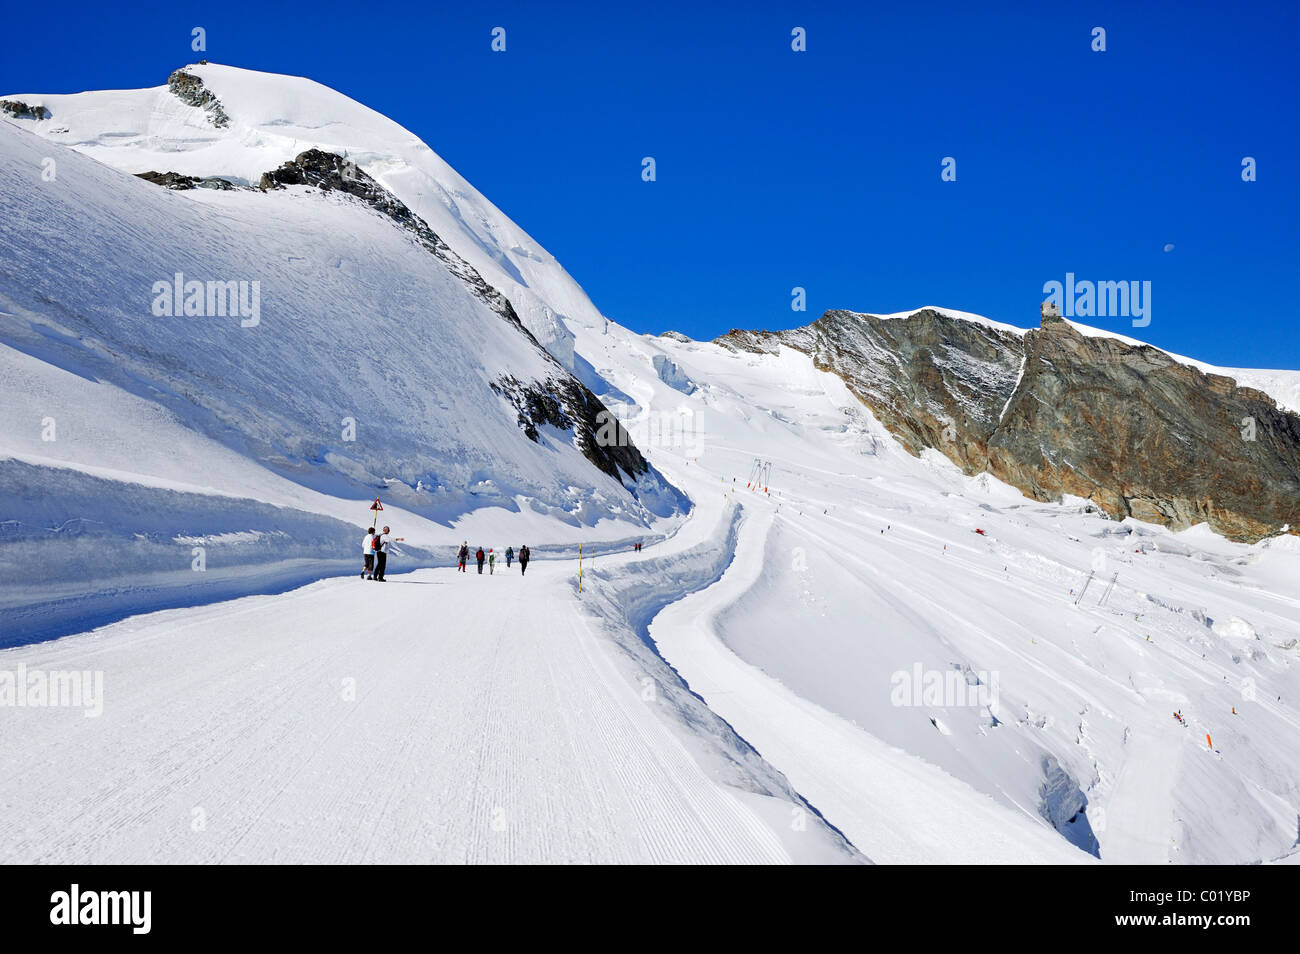 Mt. Allalinhorn con estate piste da sci in primo piano, Saas fee, Vallese, Svizzera, Europa Foto Stock